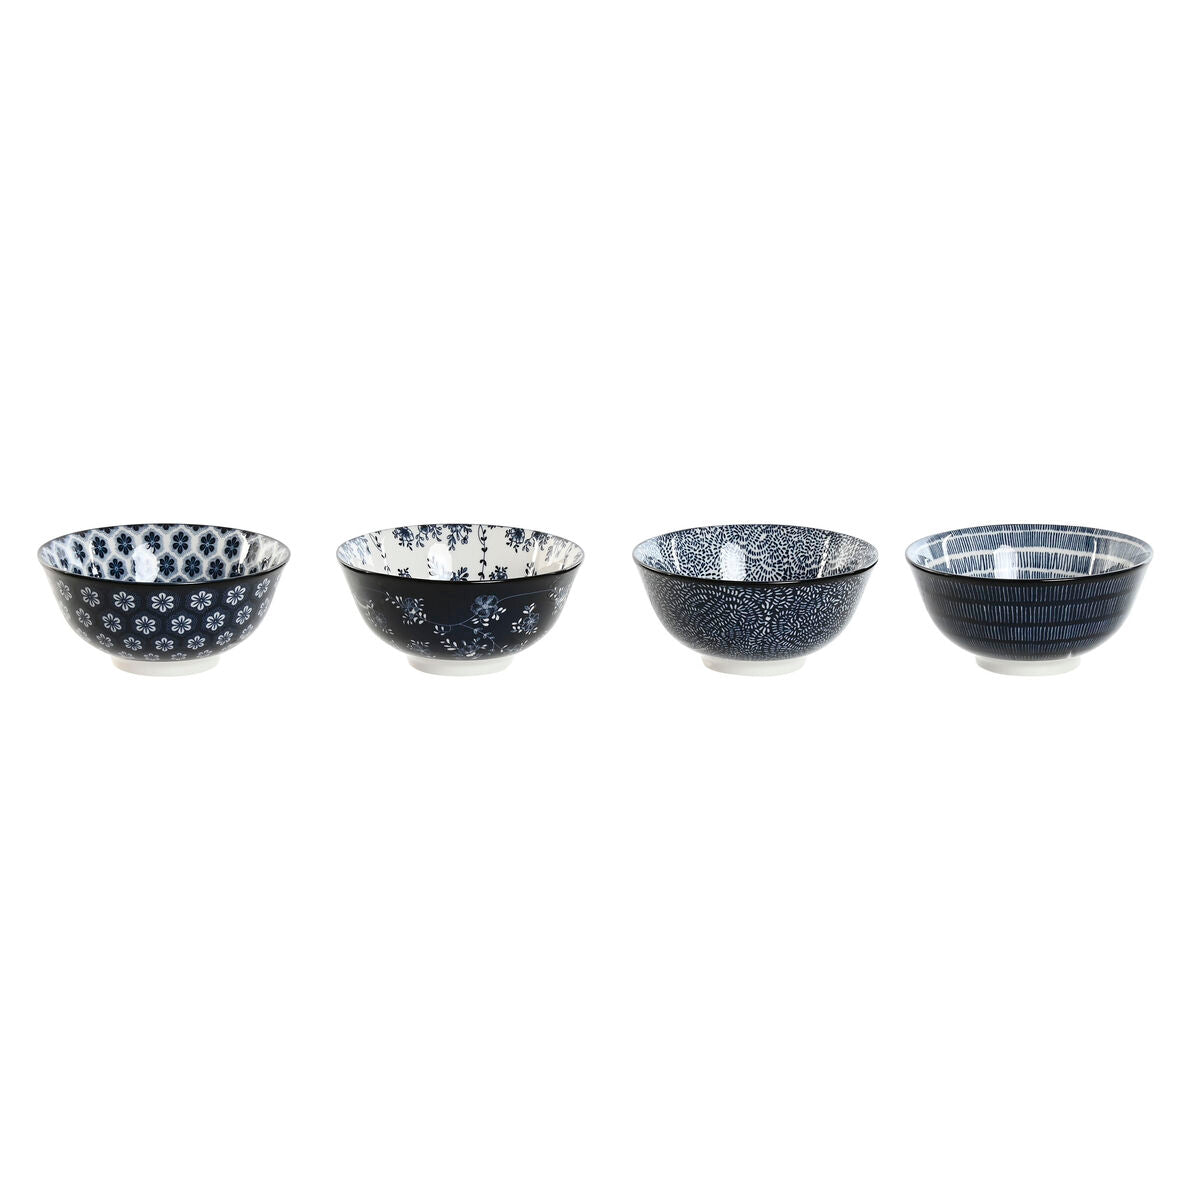 Set of bowls Home ESPRIT Blue White Porcelain Shabby Chic 15 x 15 x 7 cm